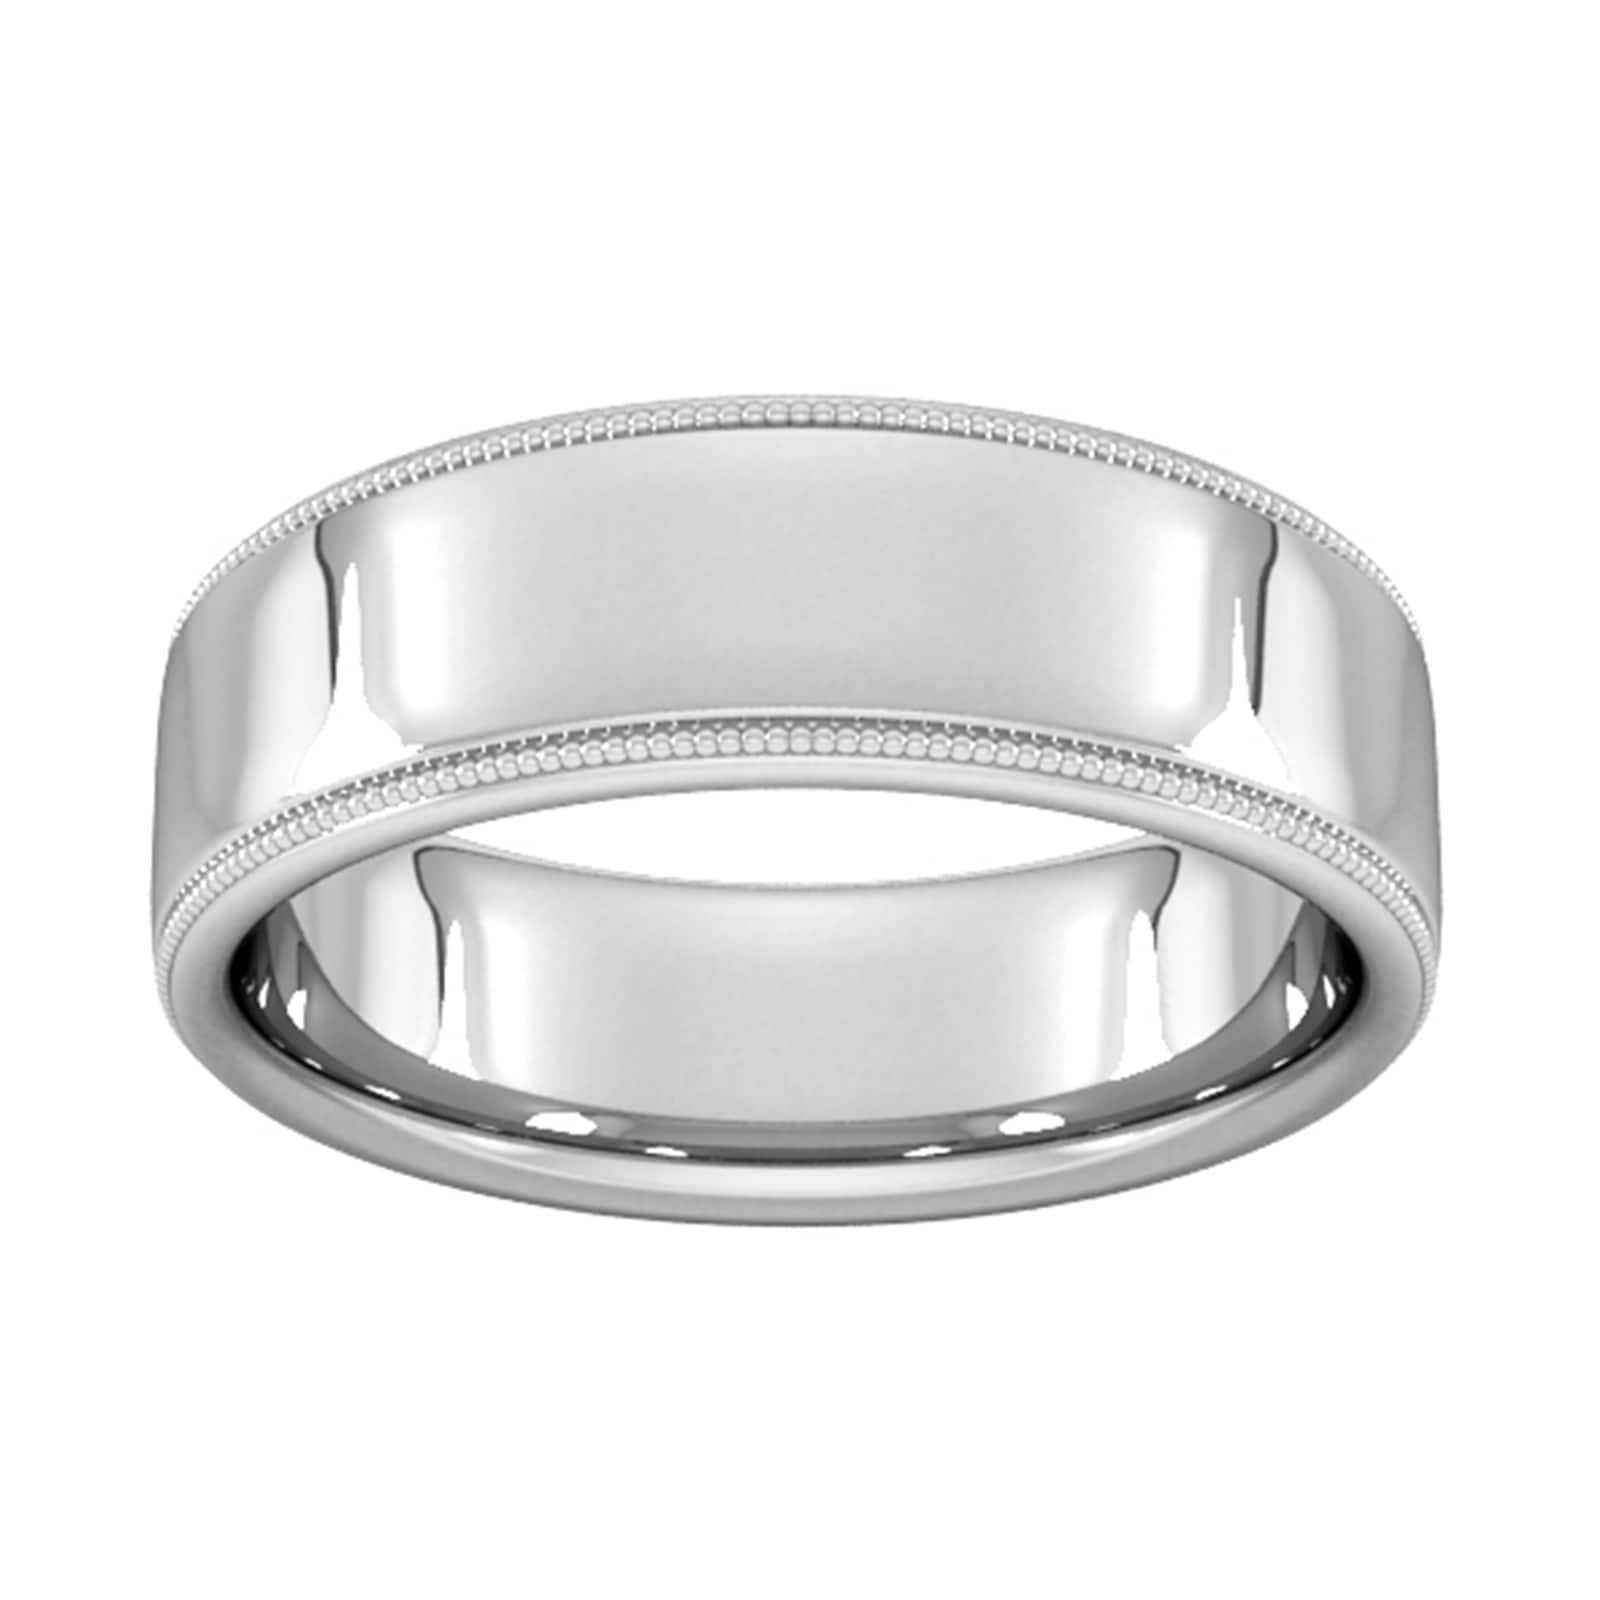 7mm Slight Court Extra Heavy Milgrain Edge Wedding Ring In 9 Carat White Gold - Ring Size I